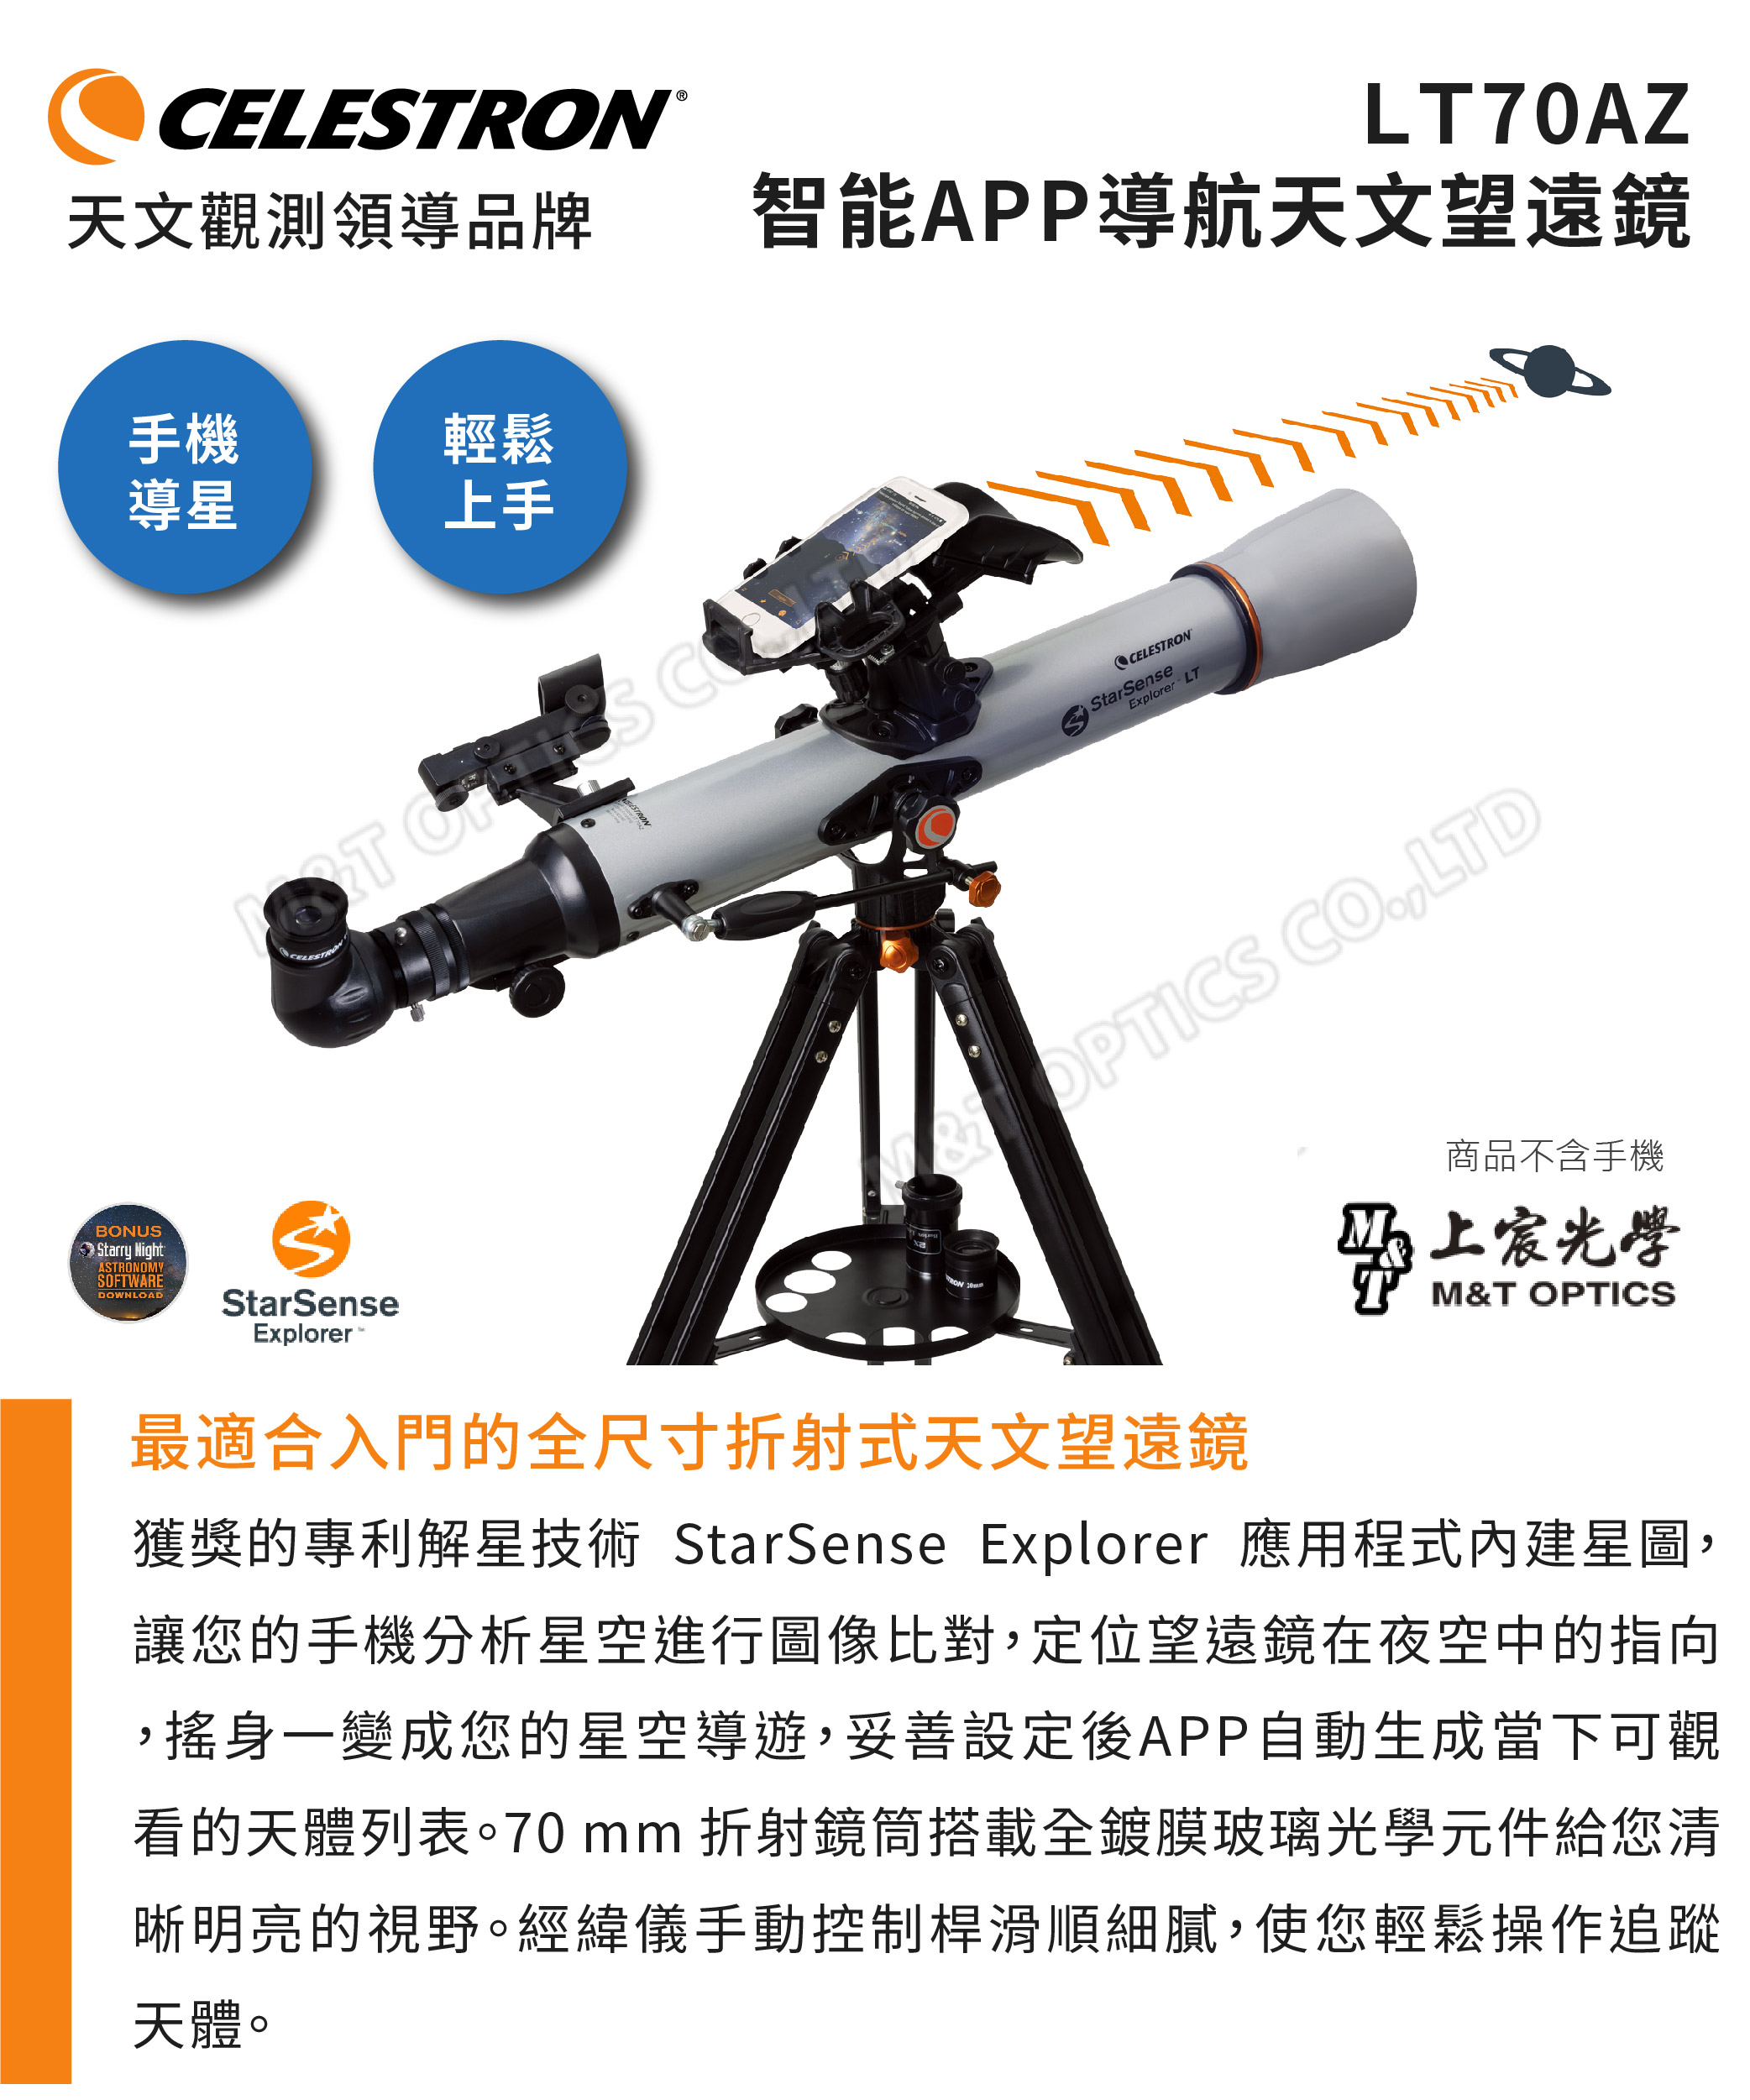 グランドセール スタ-センス エクスプロ-ラ-LT70 ビクセン 天体望遠鏡 StarSense Explorer LT 70AZ 